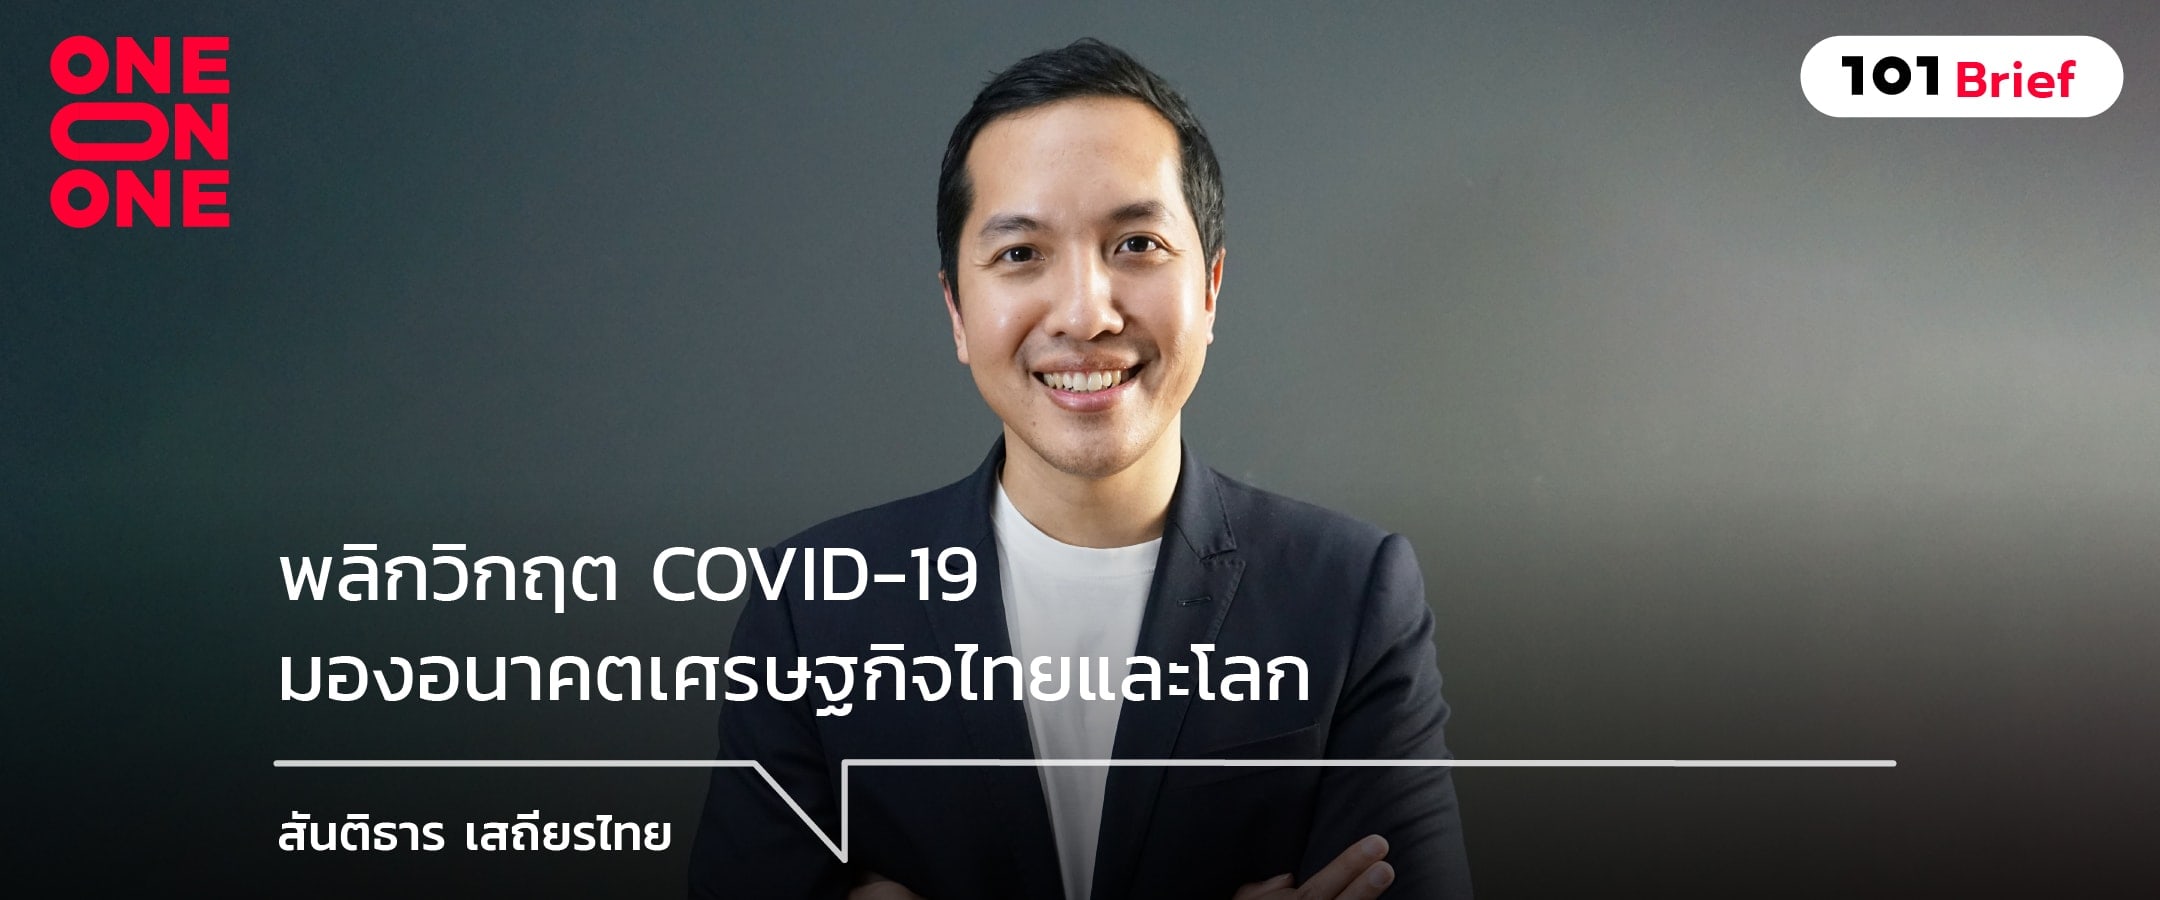 พลิกวิกฤต COVID-19 มองอนาคตเศรษฐกิจไทยและโลก